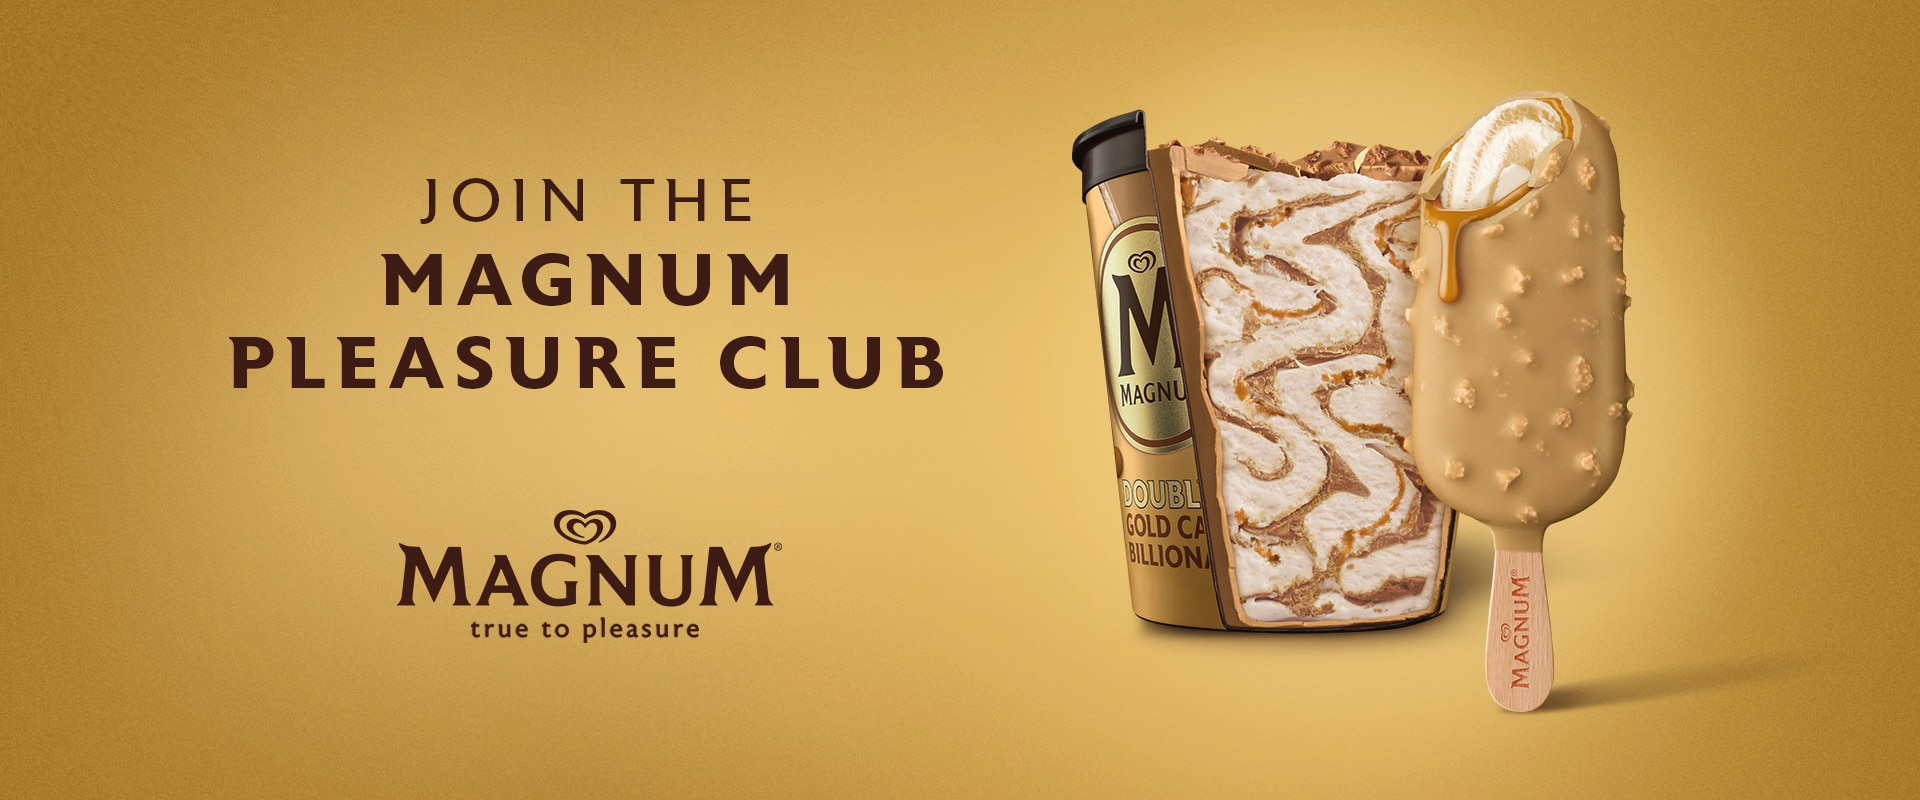 Join the Magnum Pleasure Club - Magnum Billionaire ice cream stick and tub